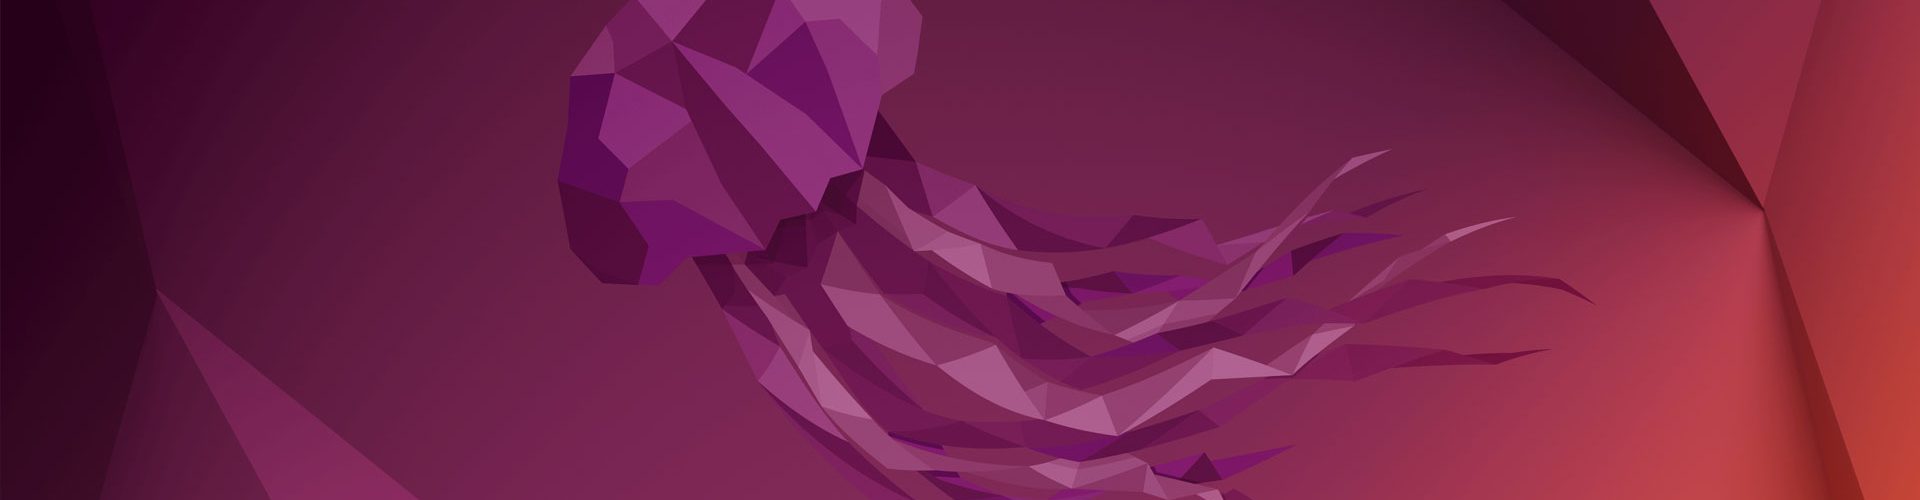 ubuntu 22.04 wallpaper